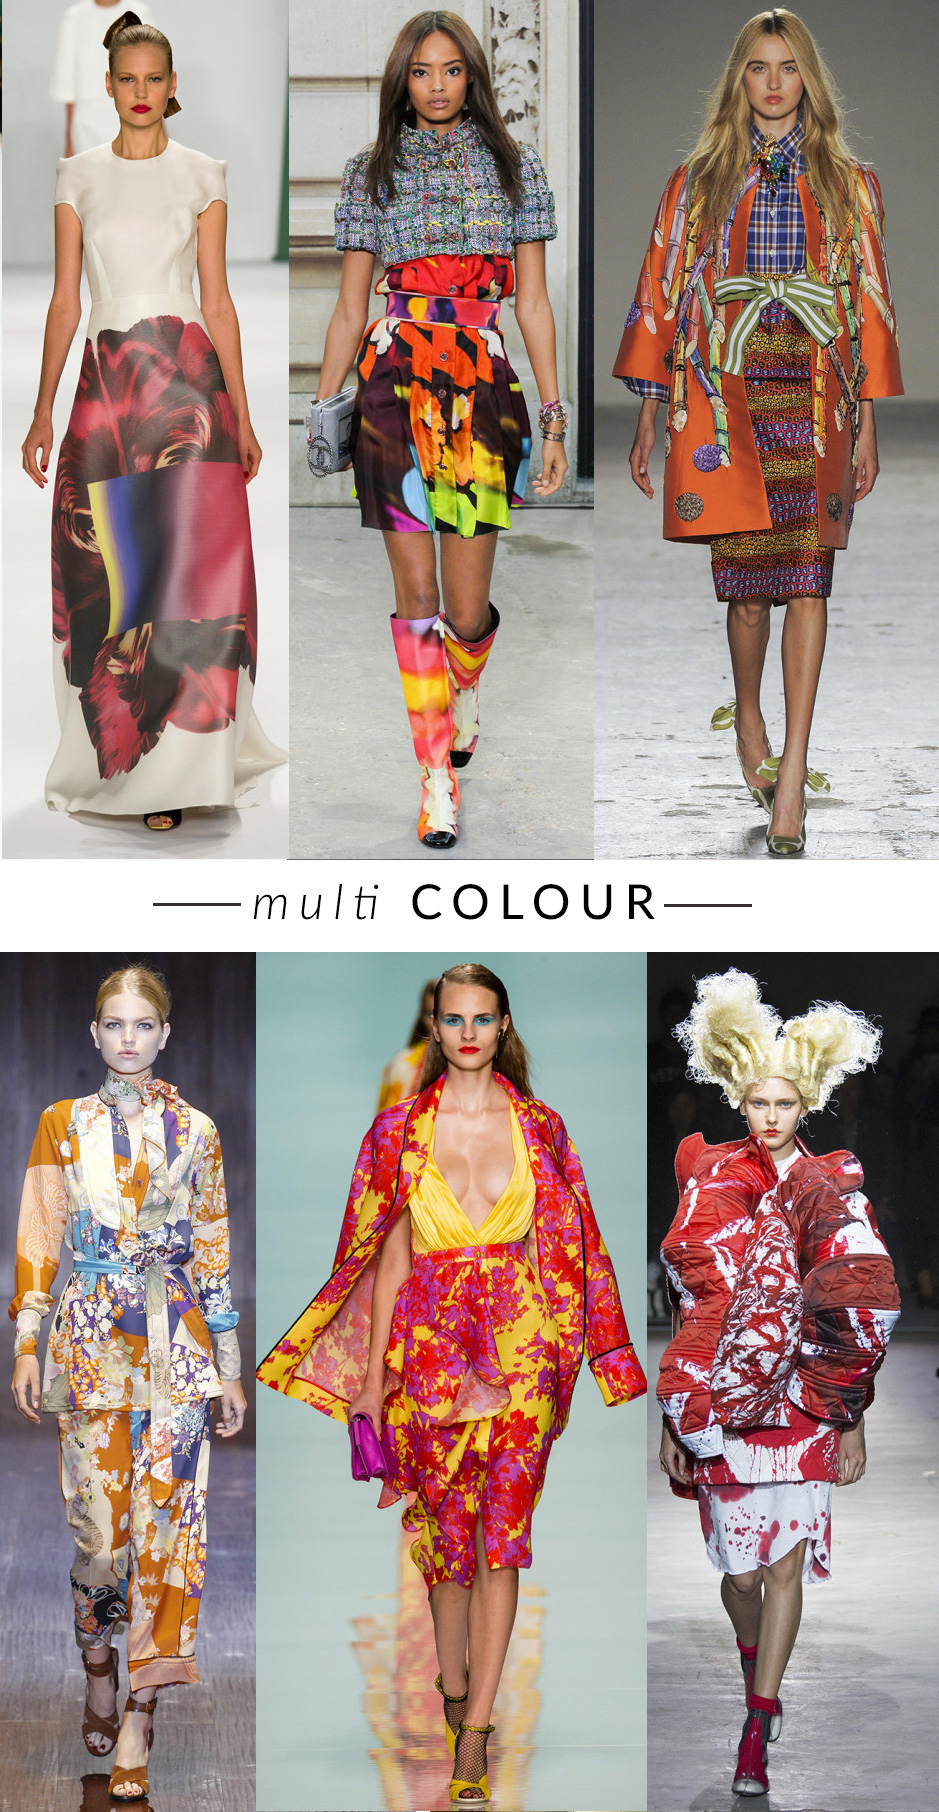 MULTICOLOR-STAMPEcolour-blocking trend moda primavera estate 2015 fashion blogger elena schiavon 